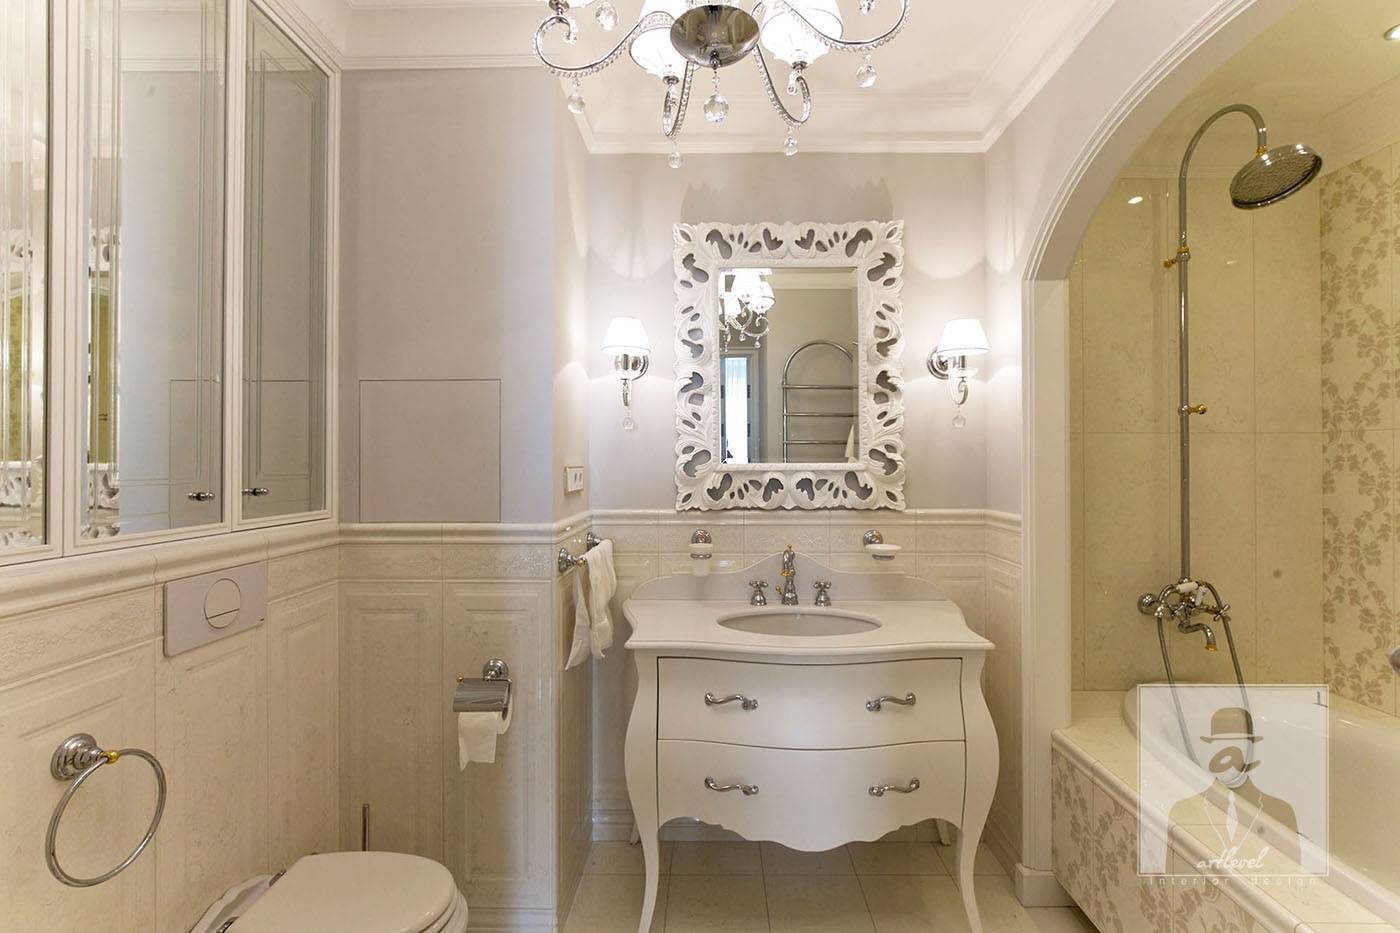 дизайн интерьера ванной комнаты в классическом стиле.дизайнер Андрей Глебов. Artlevel interior design